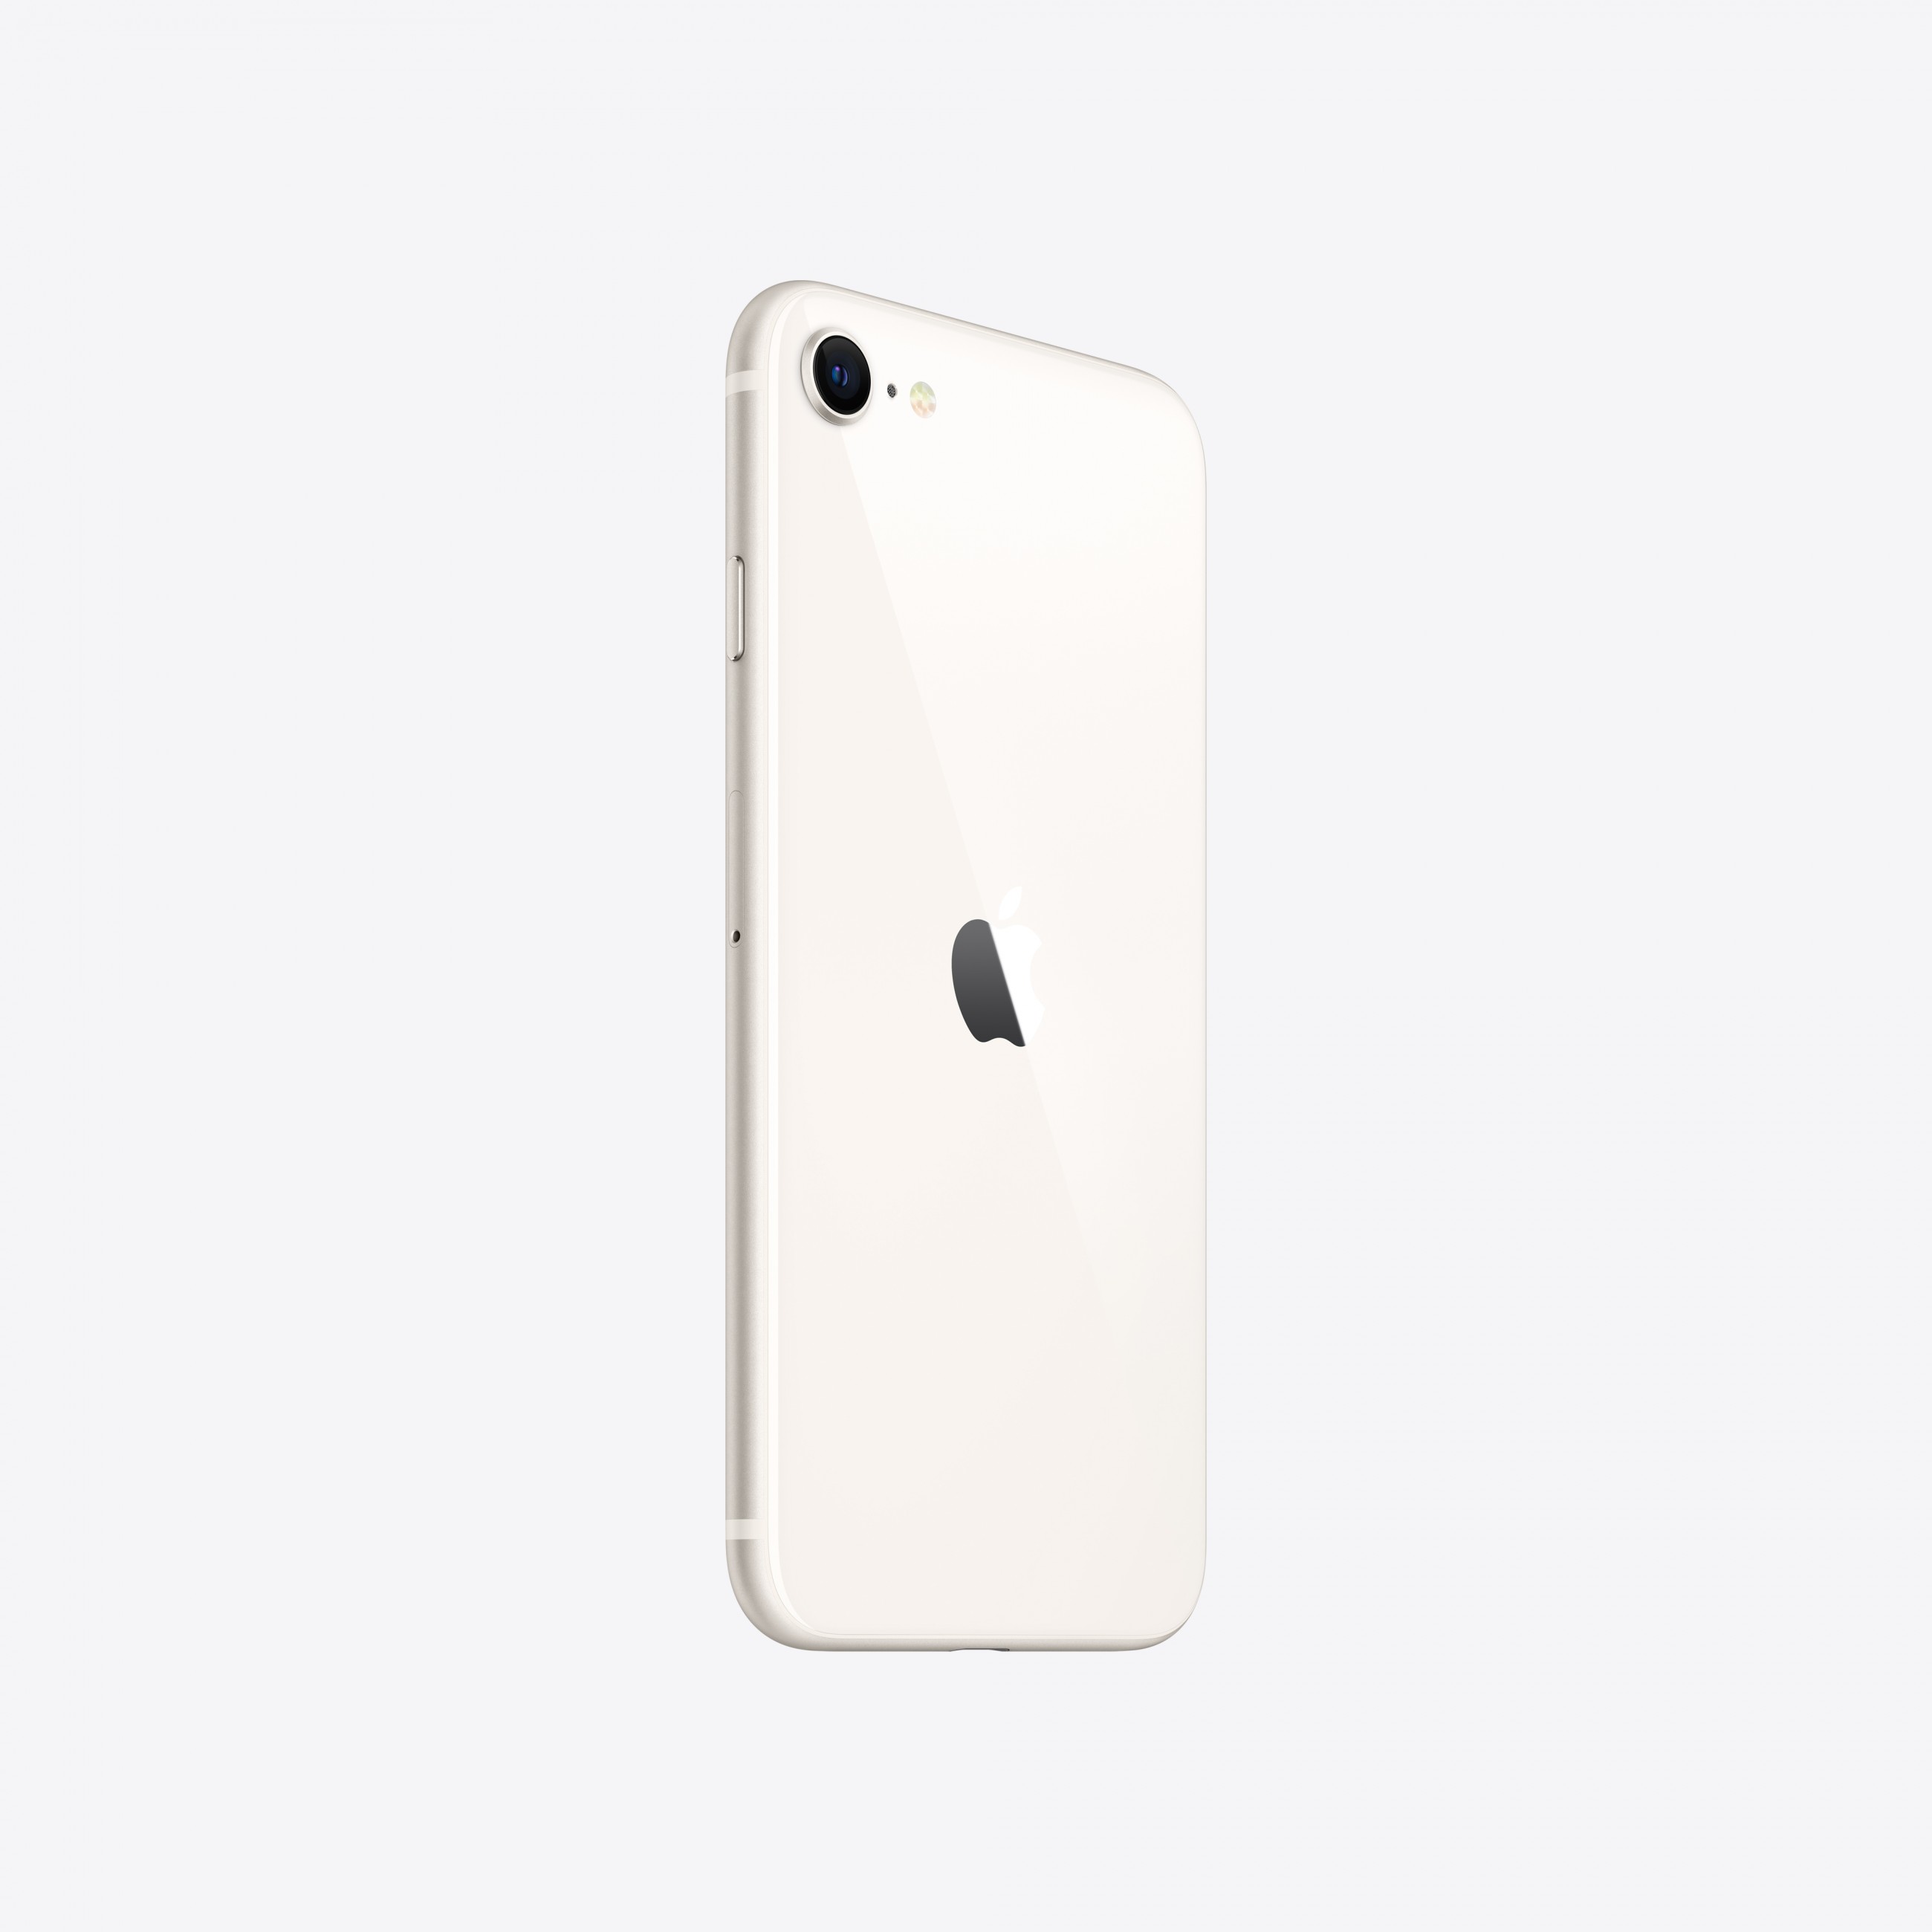 Apple iPhone SE 11,9 cm (4.7 Zoll) Dual-SIM iOS 15 5G 64 GB Weiß